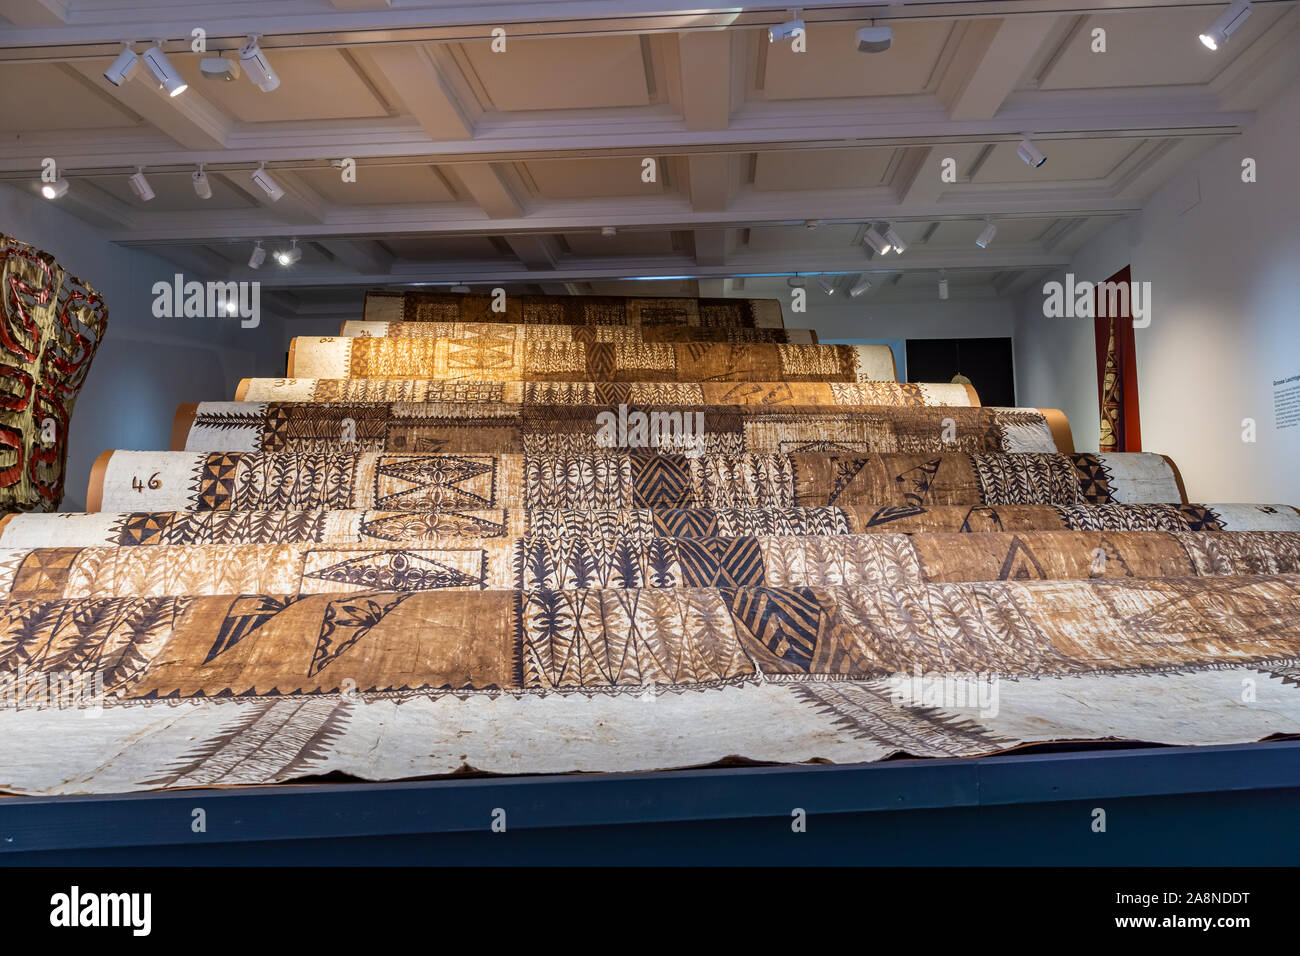 Launima énorme tissu d'écorce de Tonga, Polynésie française. Exposé au Musée des Tissus de Bâle de cultures, la Suisse. Banque D'Images